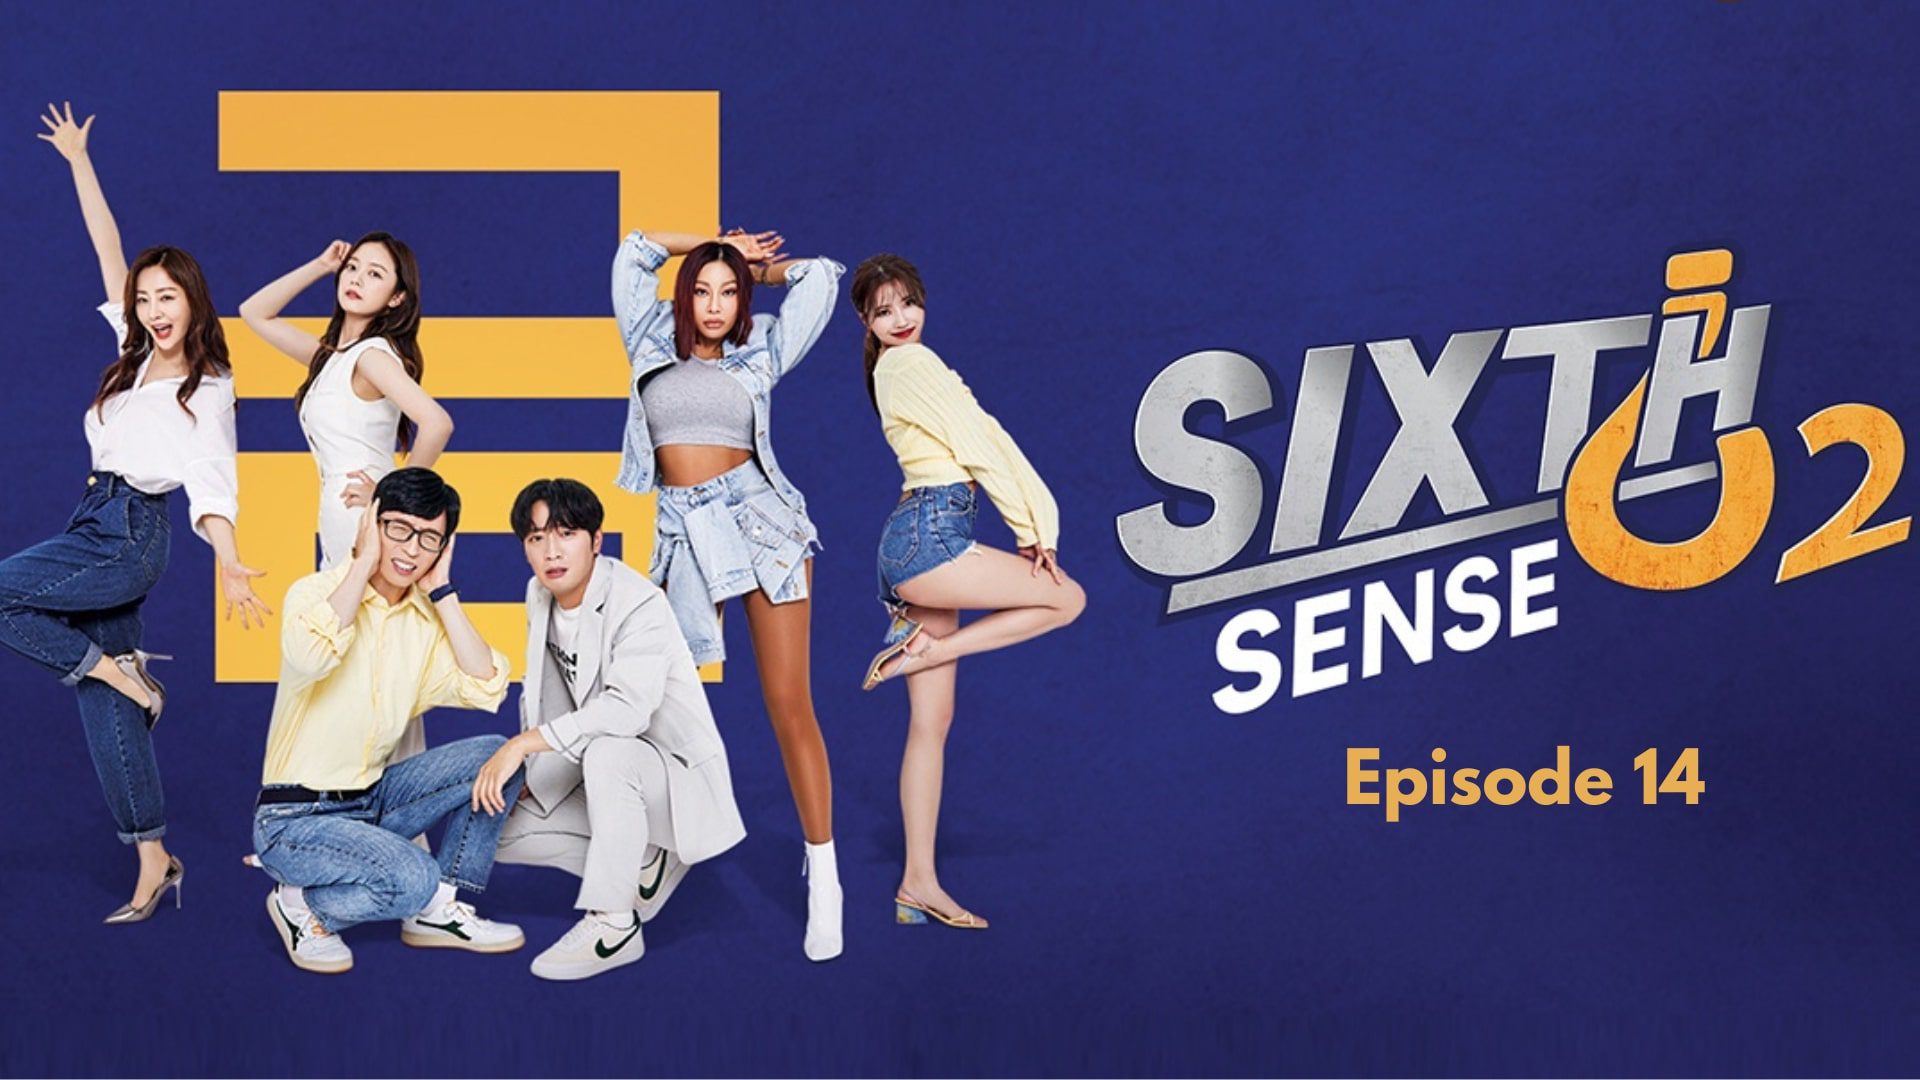 Sixth sense season 2